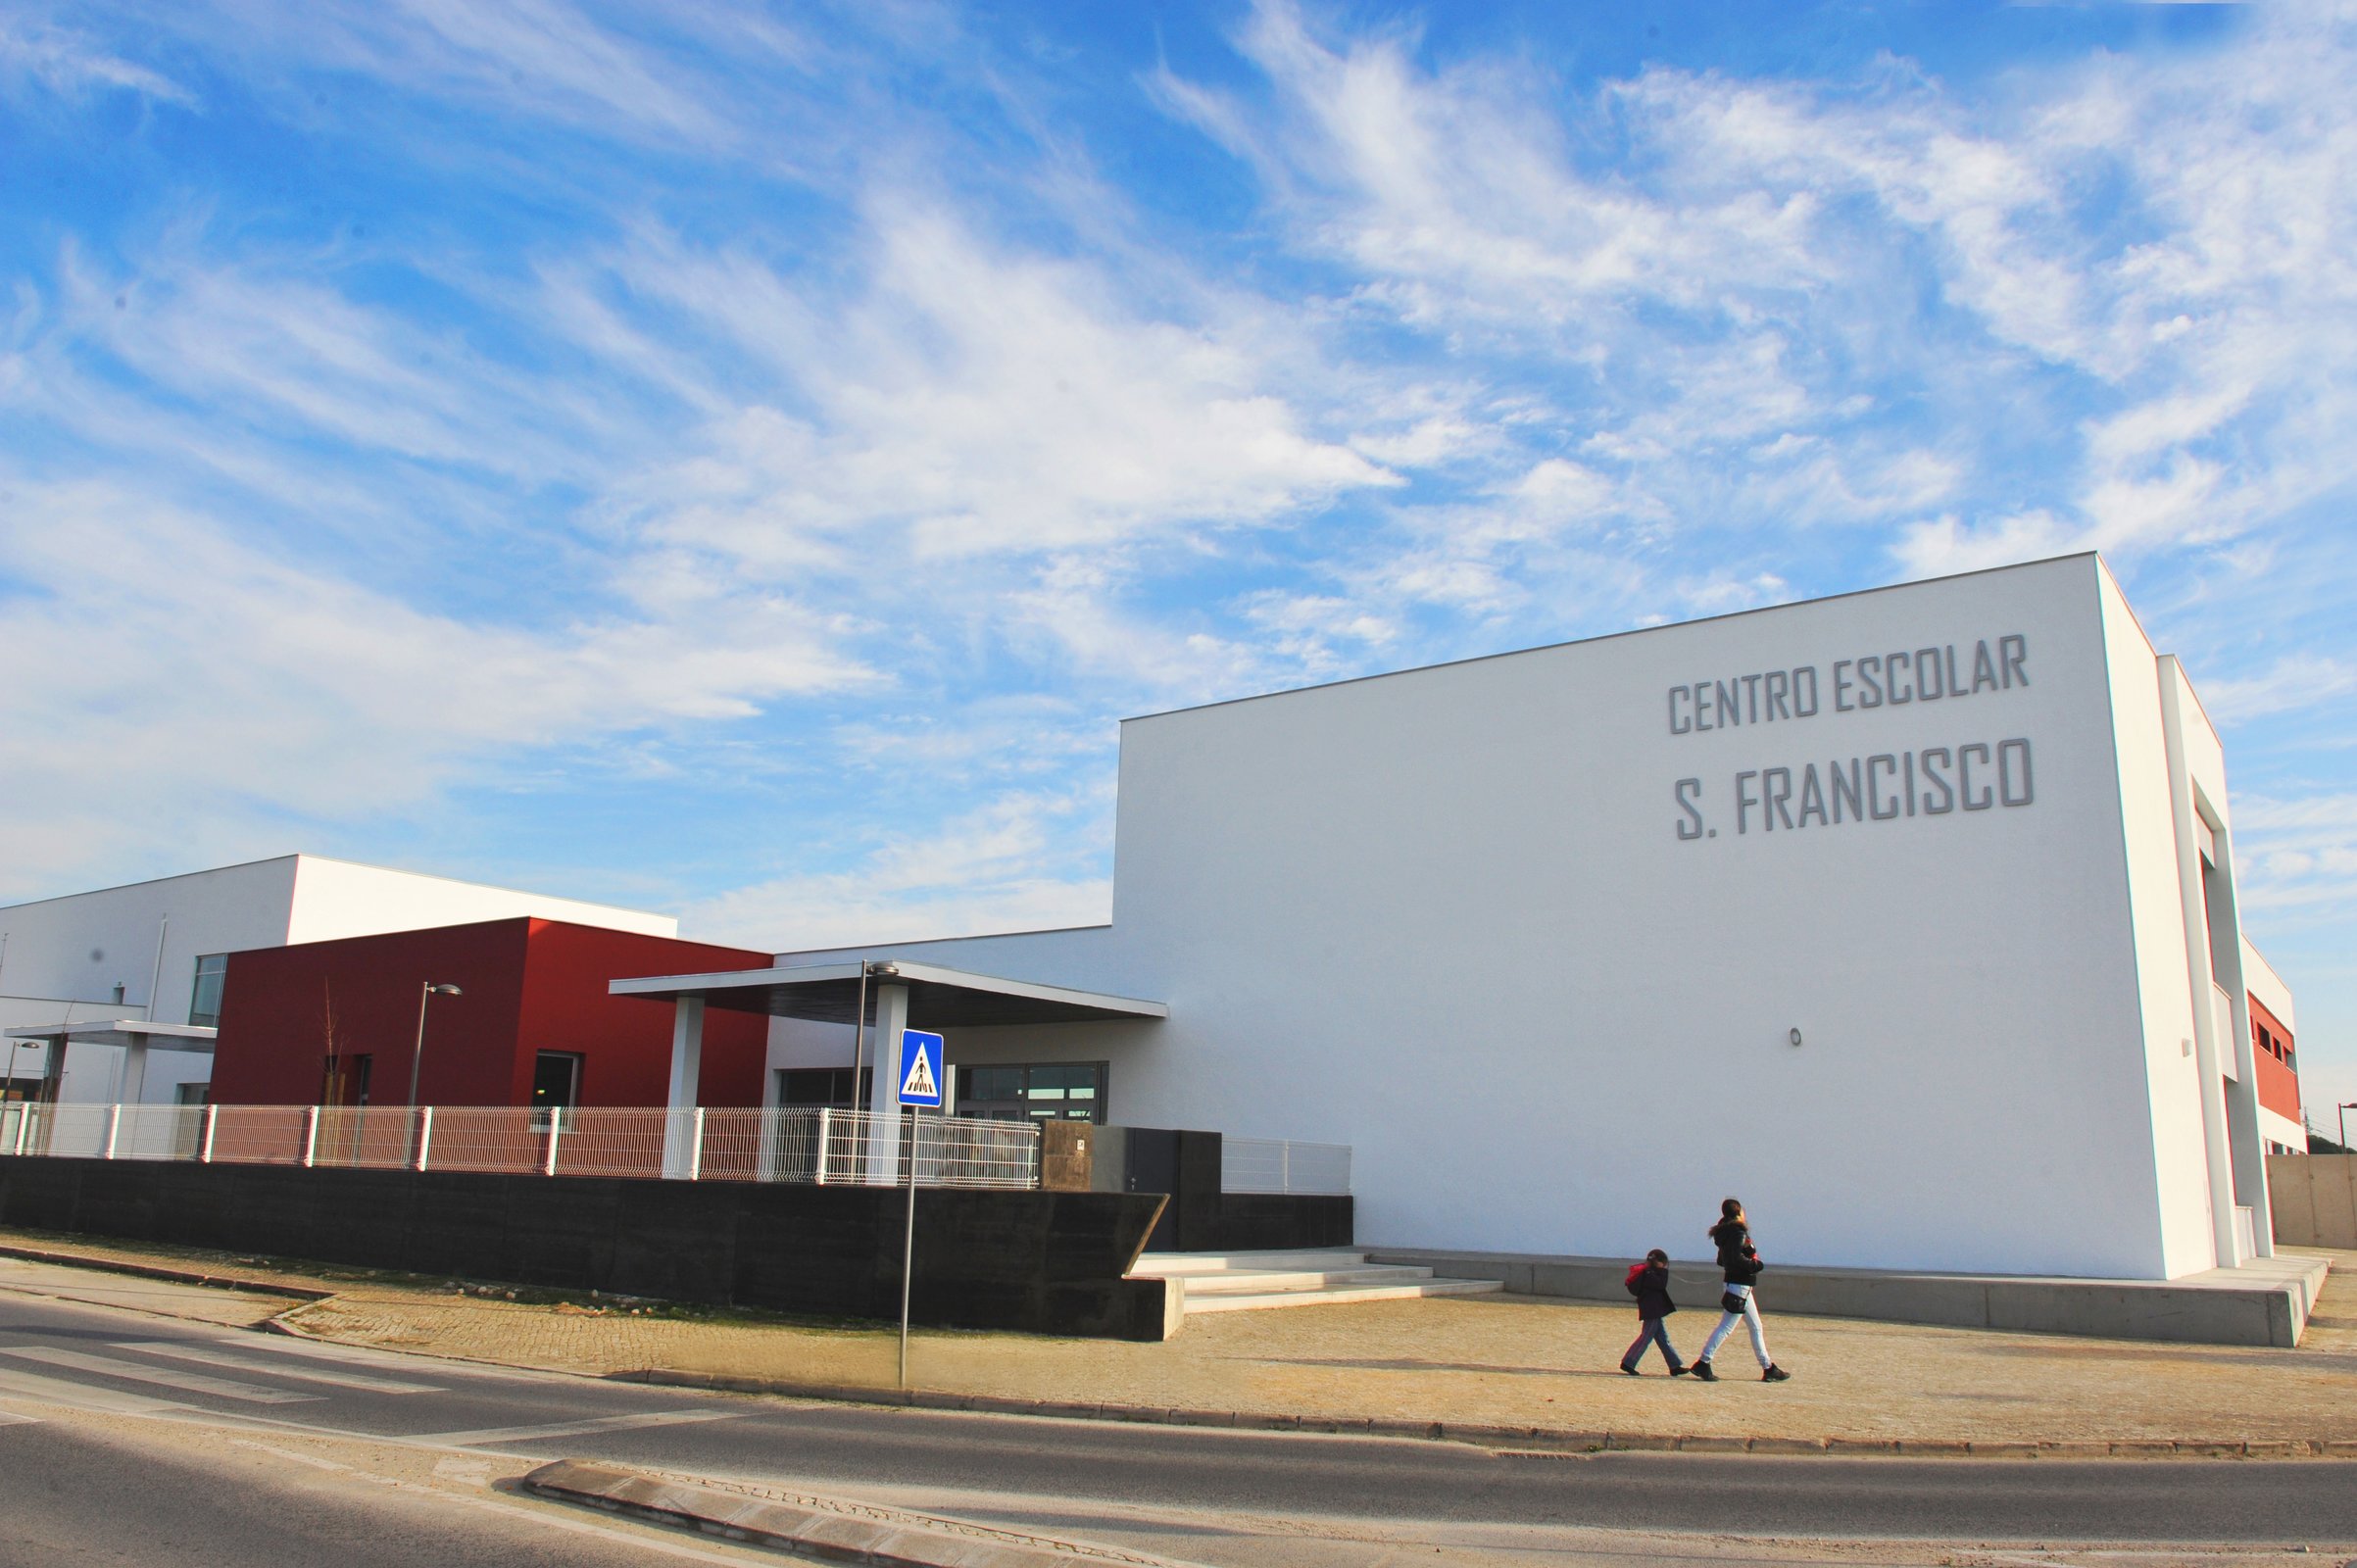 Centro Escolar de São Francisco